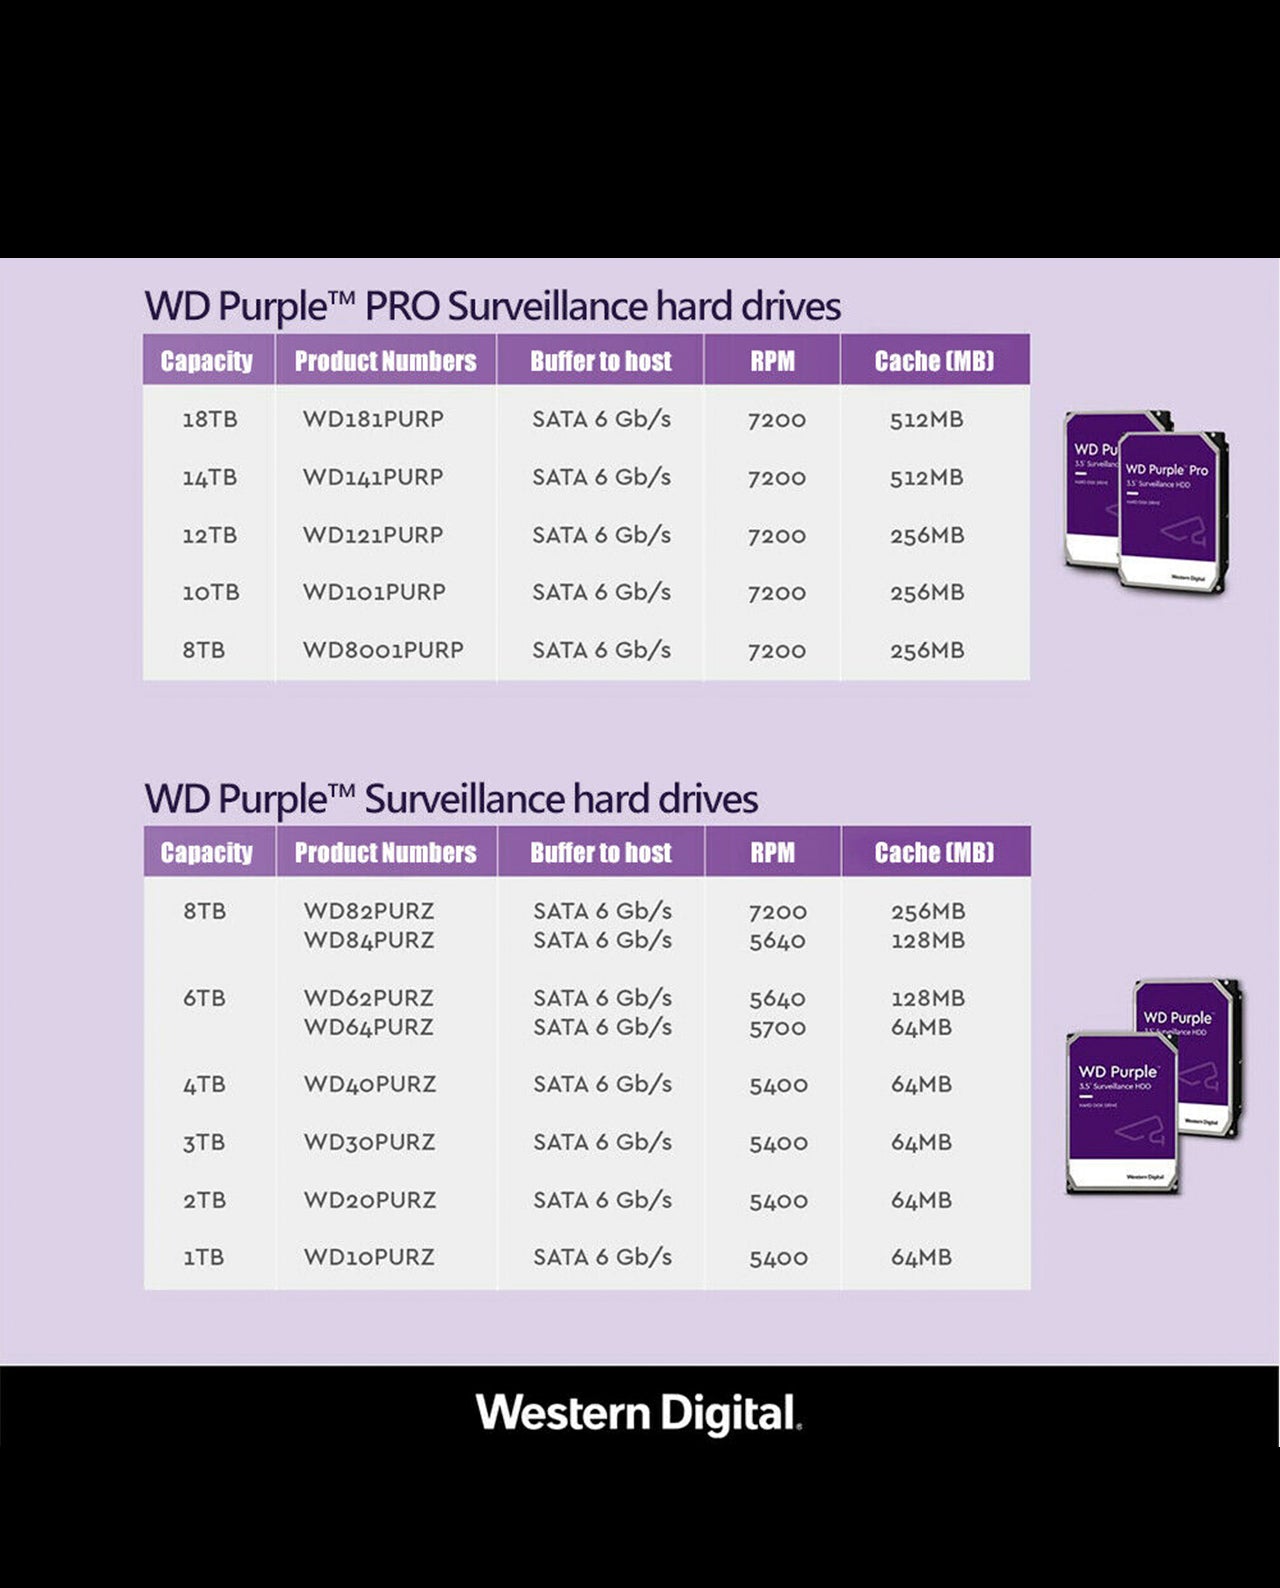 WD Purple Surveillance Hard Drive 3TB Chart